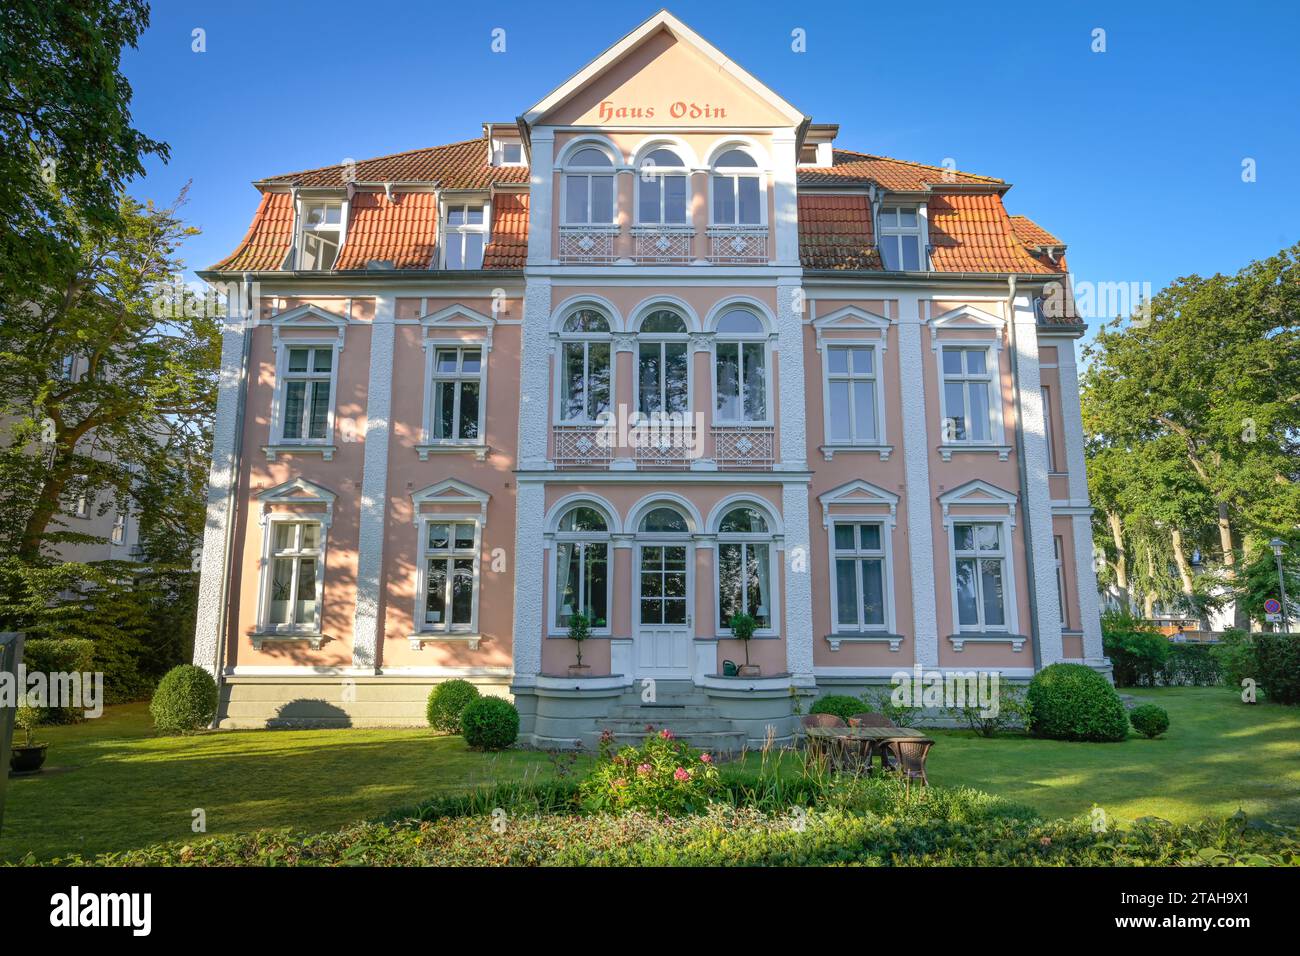 Villa Haus Odin, Delbrückstraße, Heringsdorf, Usedom, Mecklenburg-Vorpommern, Deutschland Banque D'Images